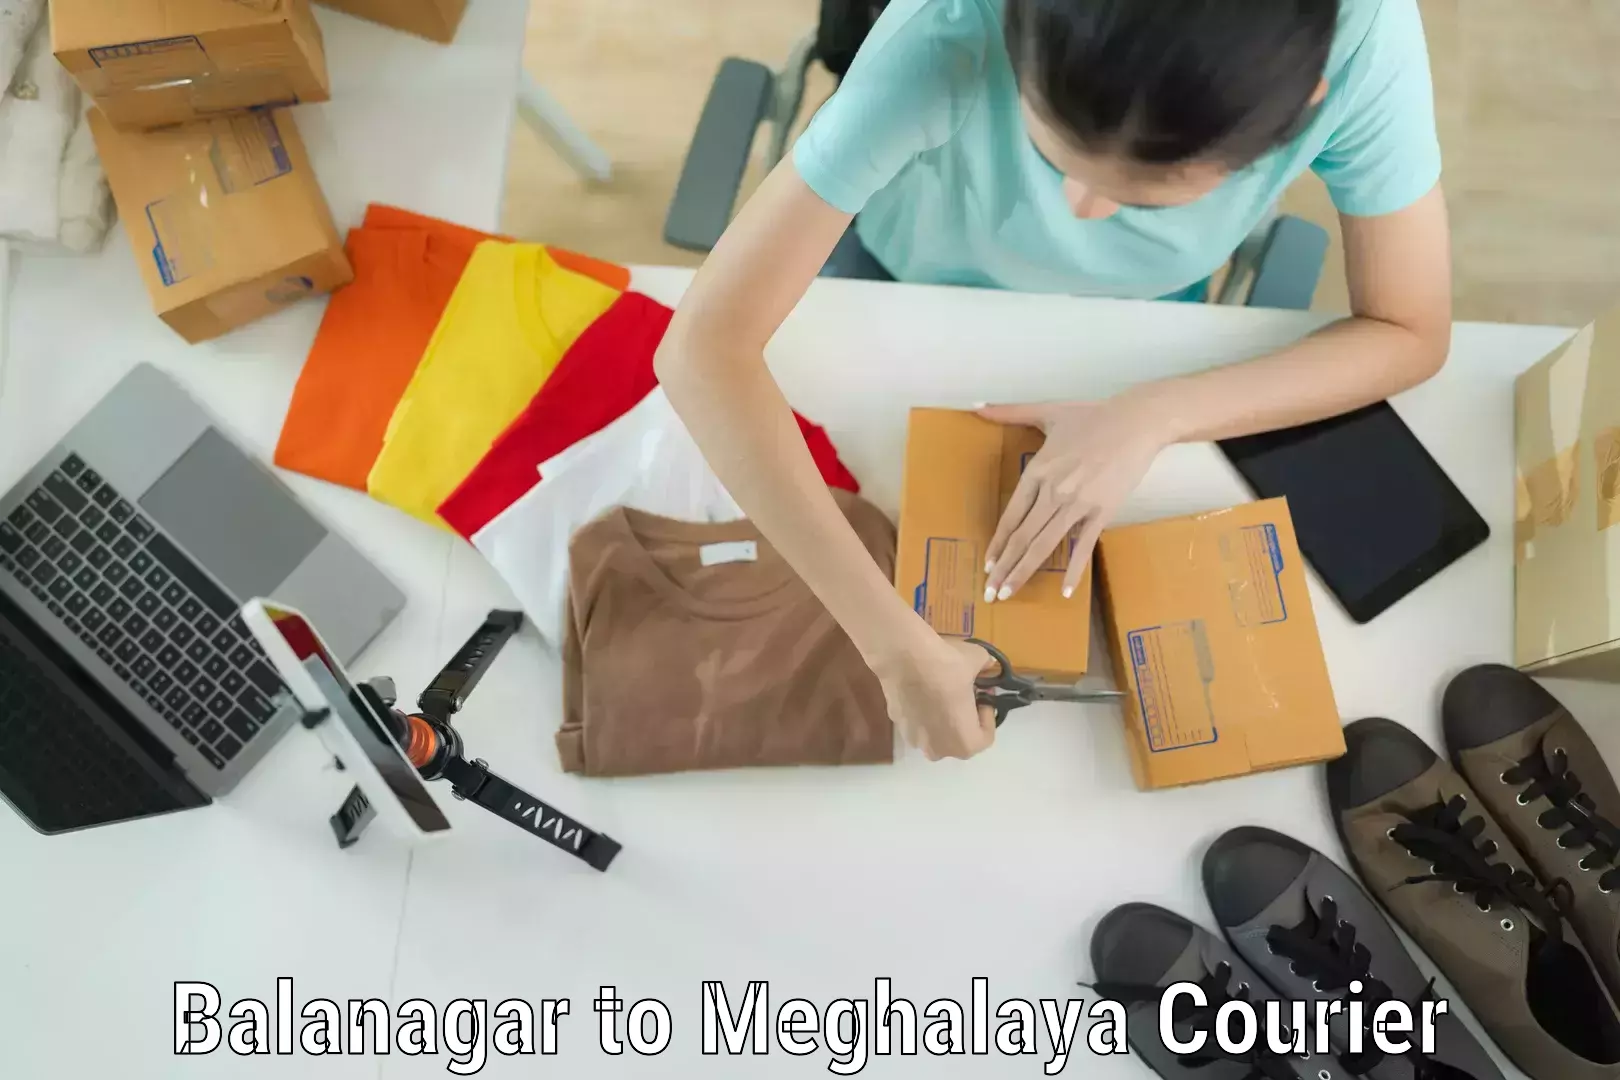 Luggage transport consulting in Balanagar to Meghalaya